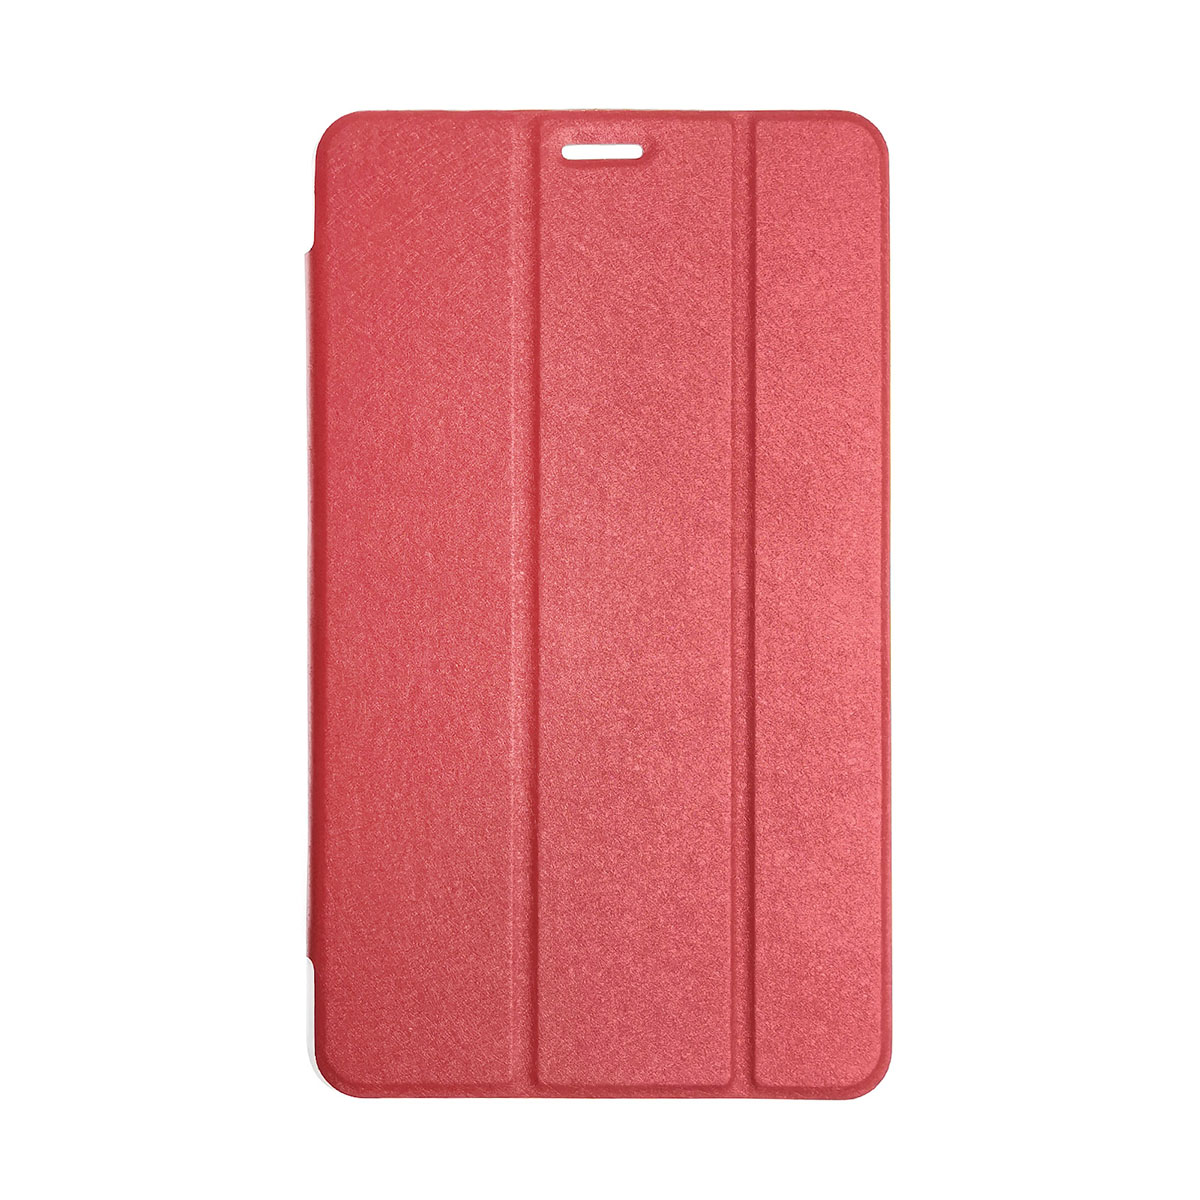 Чехол книжка TransCover для SAMSUNG Galaxy TAB A 8.0 (SM-T380, T385), цвет красный.